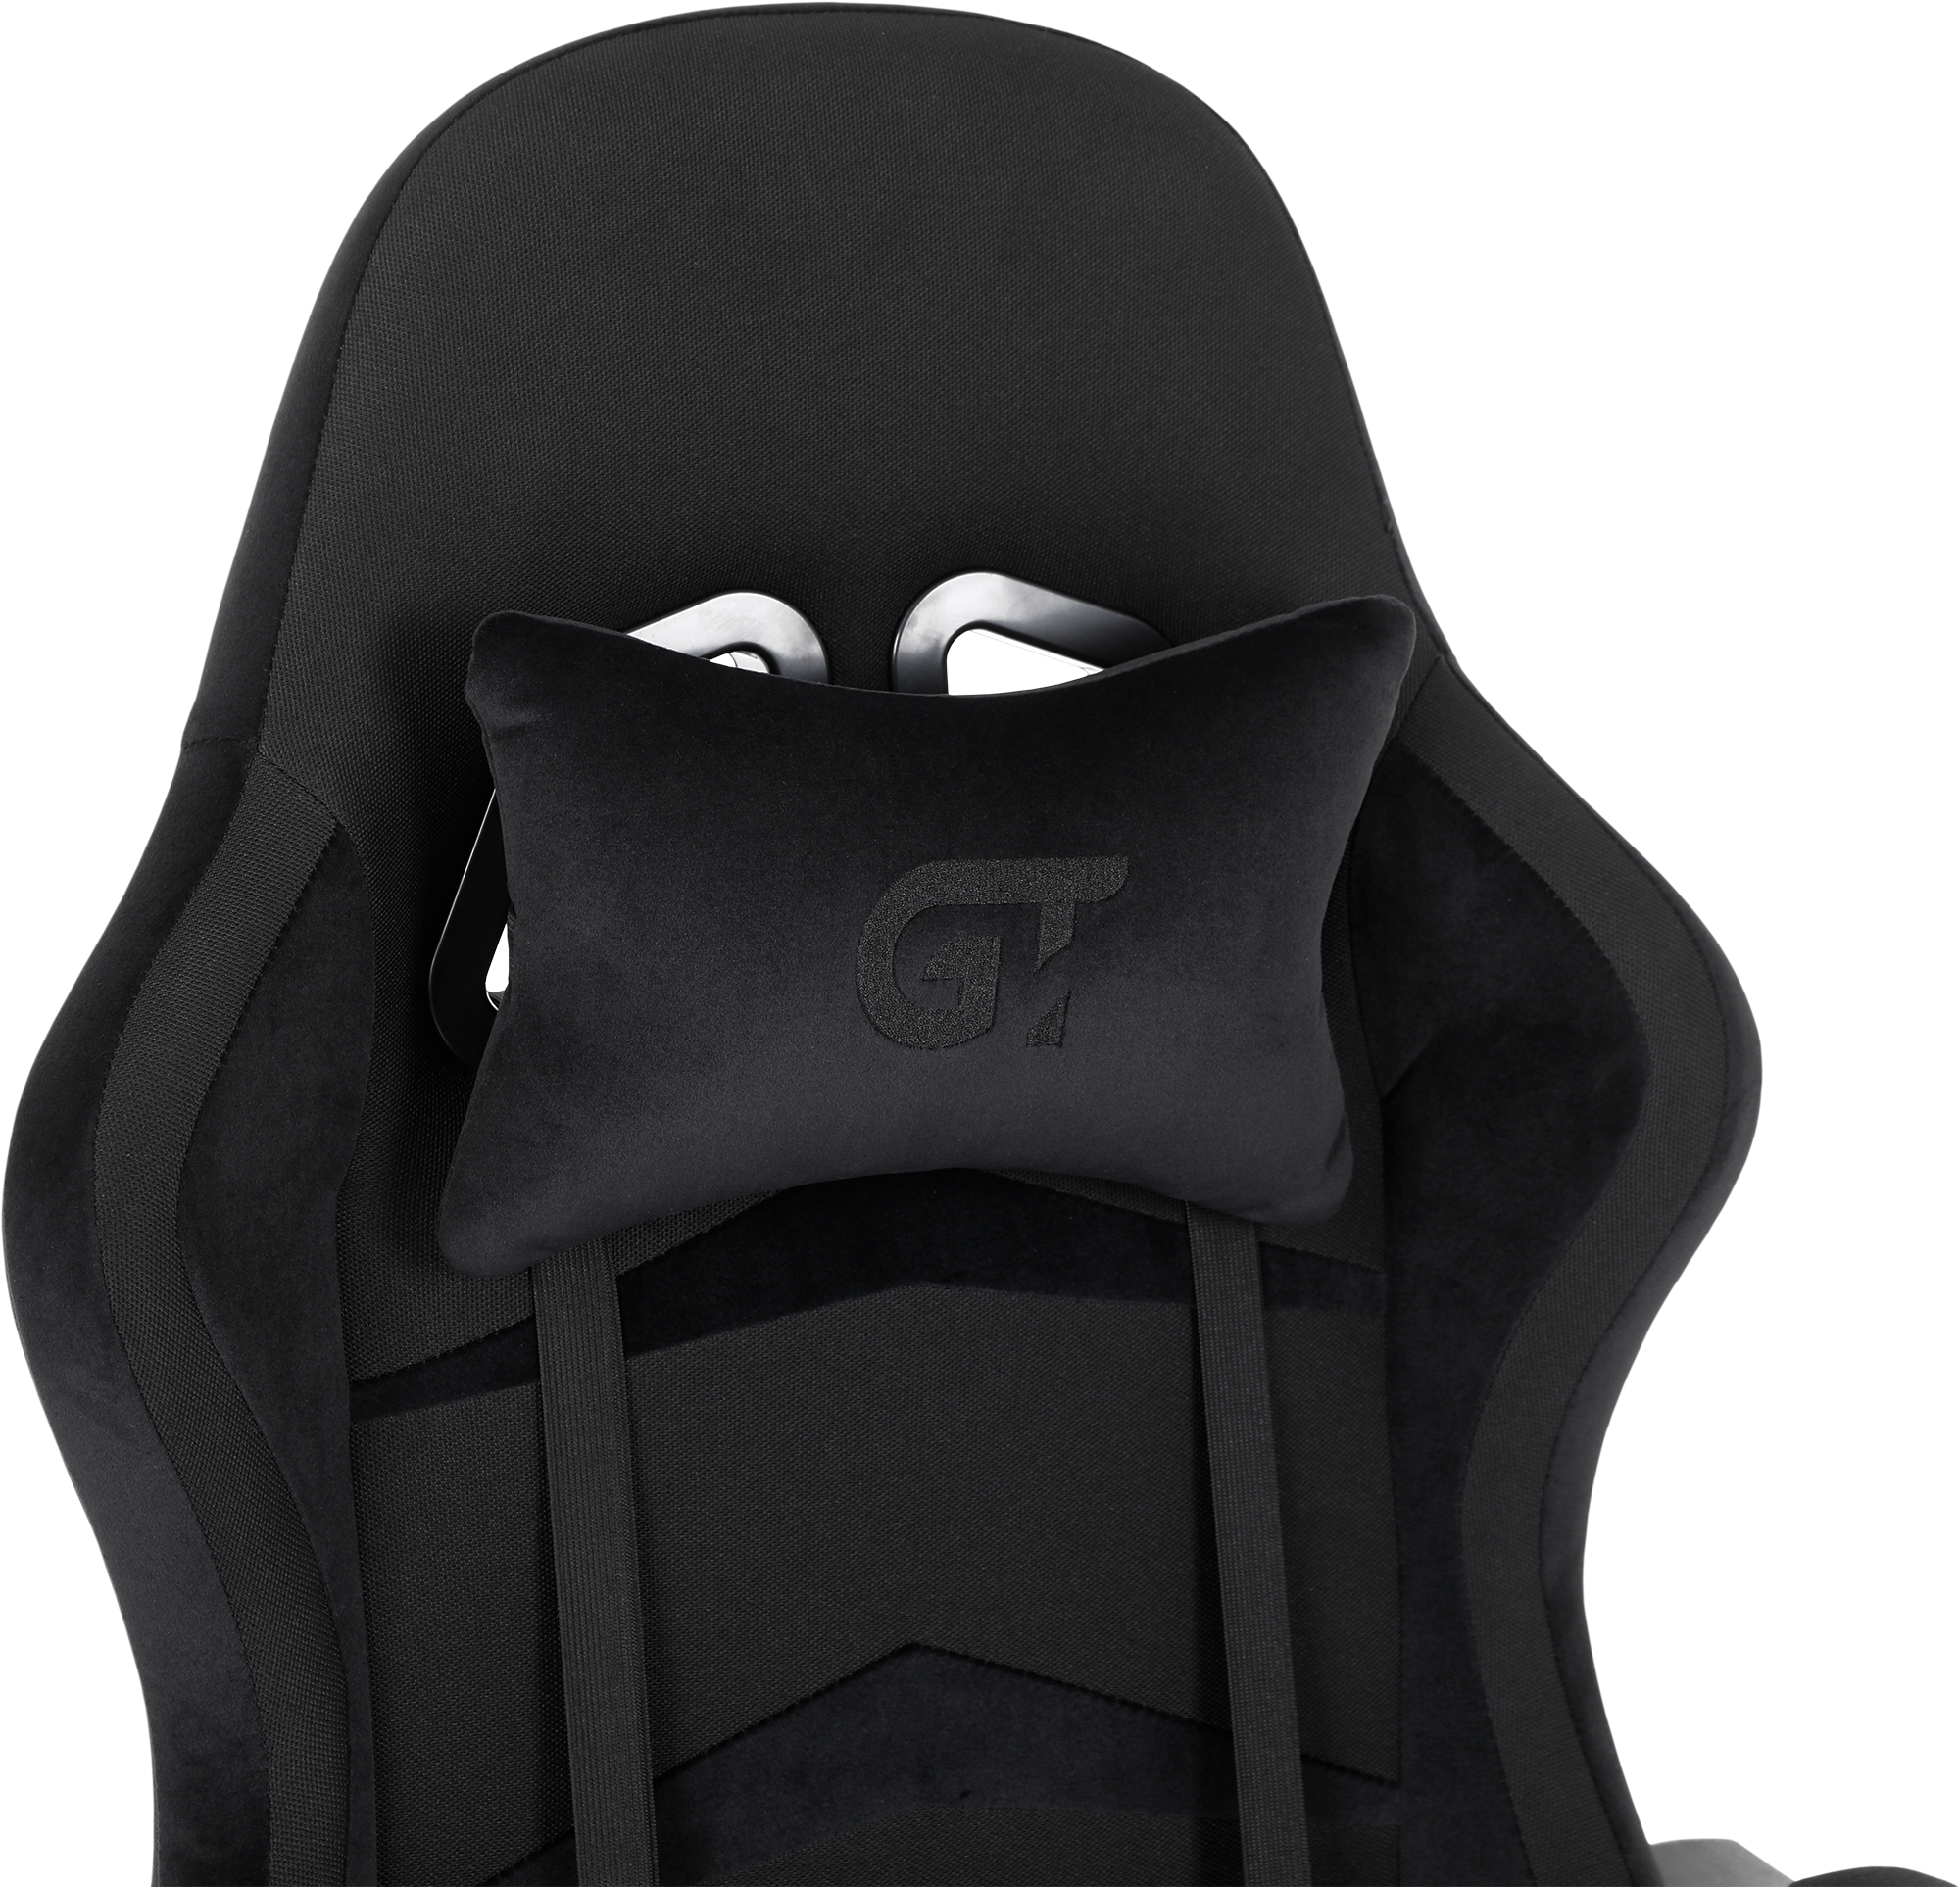 Геймерское кресло GT Racer черное (X-2324 Fabric Black Suede) - фото 6